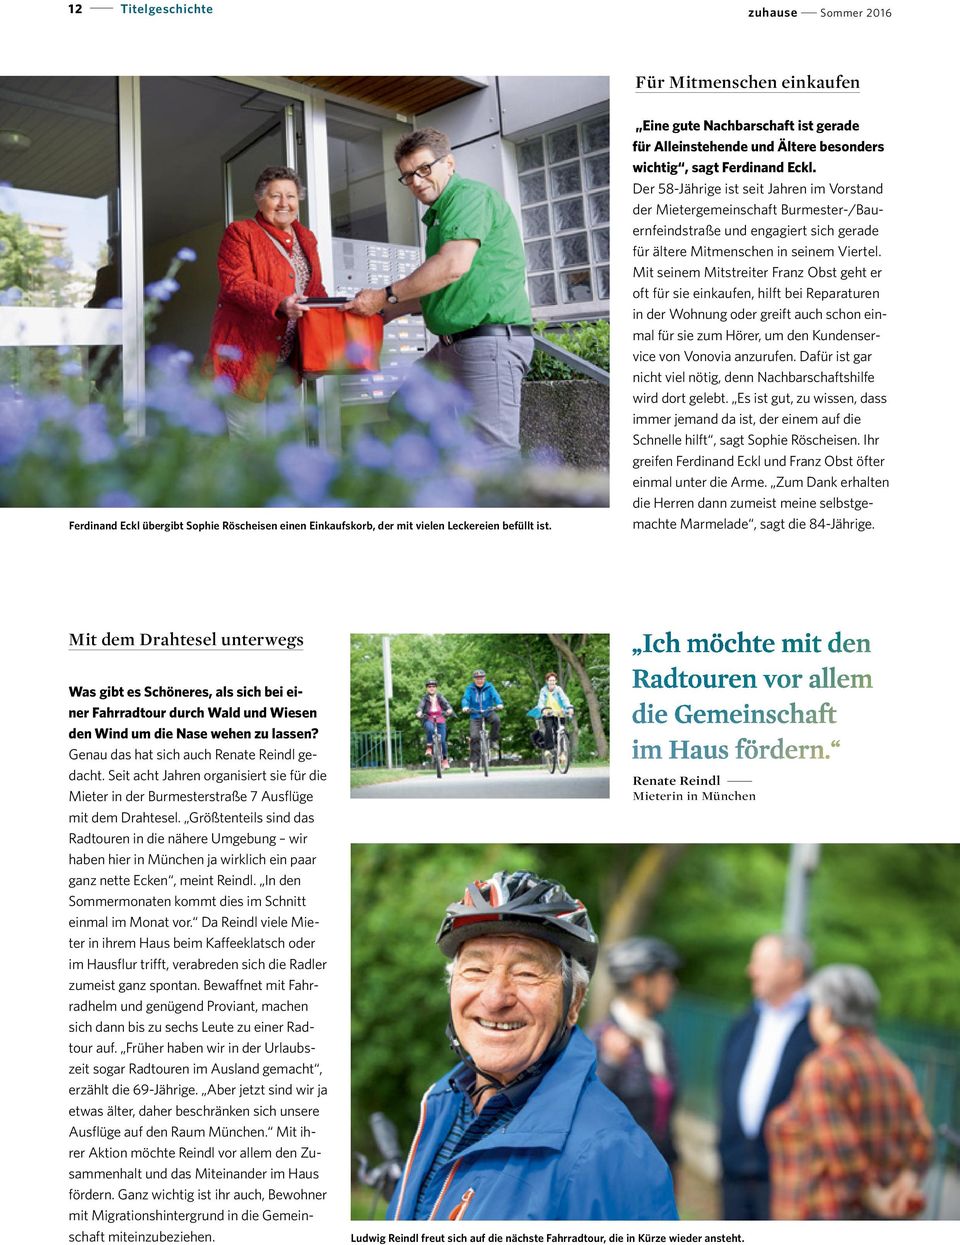 Der 58-Jährige ist seit Jahren im Vorstand der Mietergemeinschaft Burmester-/Bauernfeindstraße und engagiert sich gerade für ältere Mitmenschen in seinem Viertel.